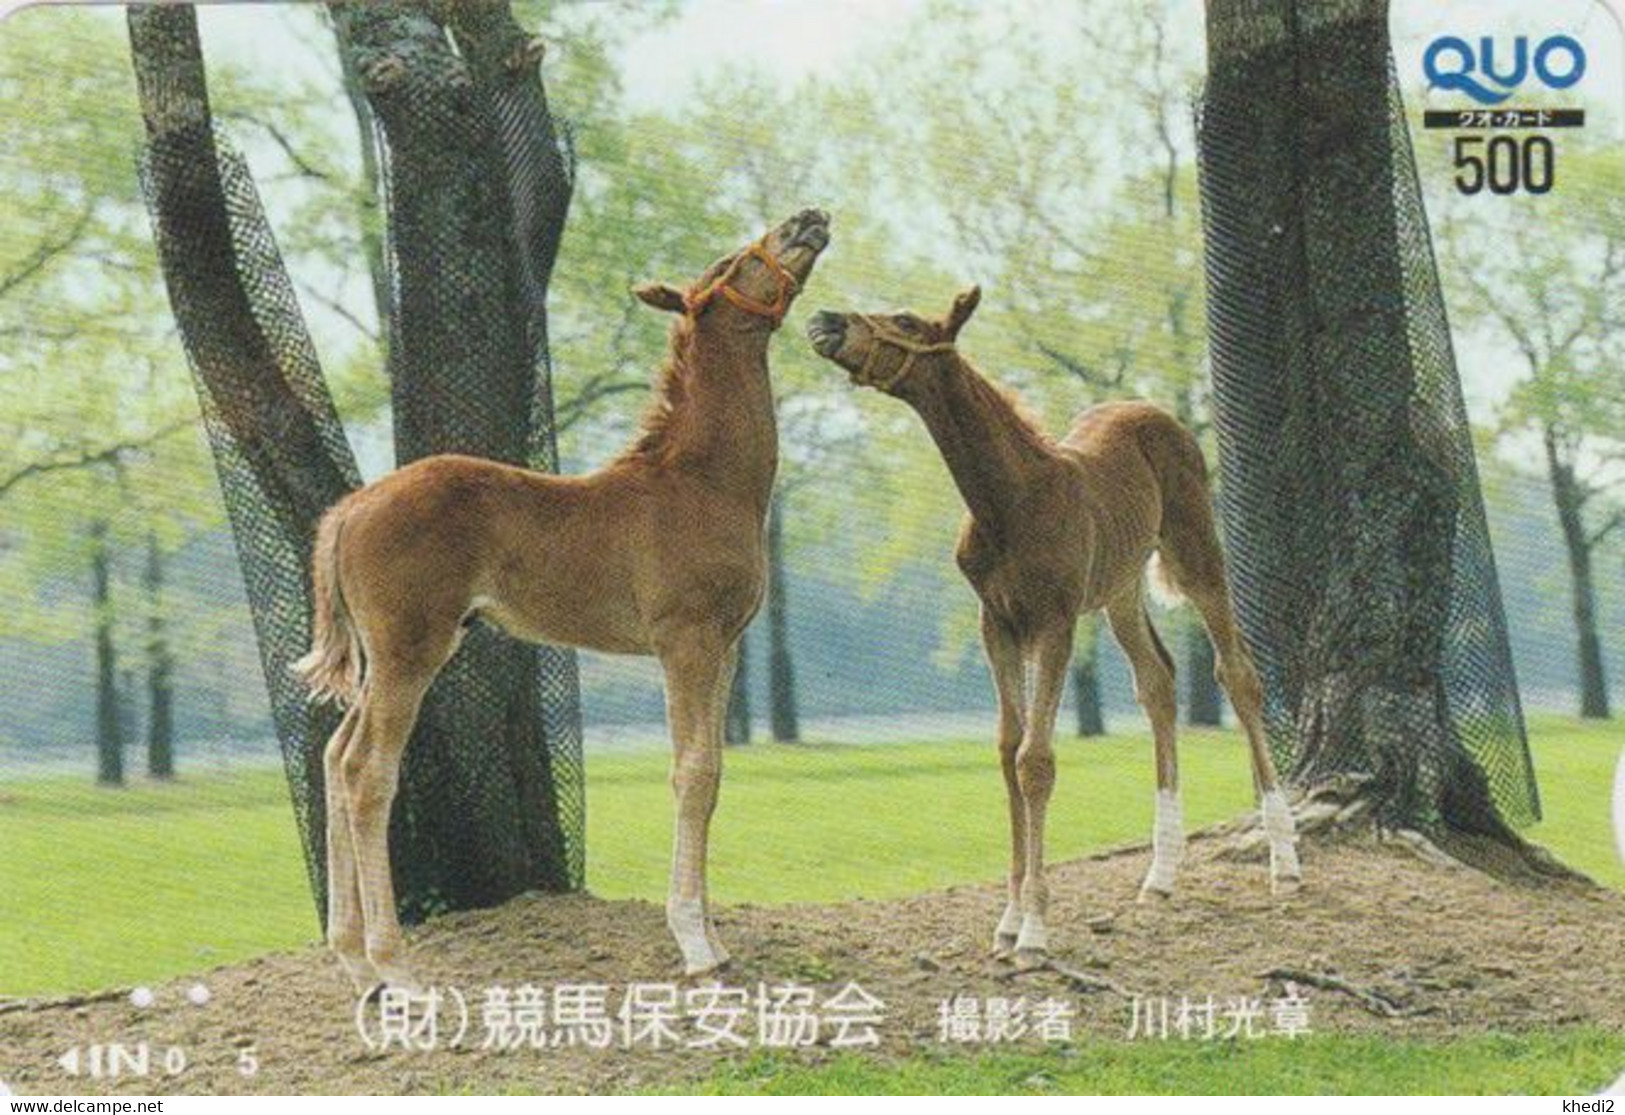 Carte Prépayée JAPON - ANIMAL - CHEVAL Chevaux / Poulain - HORSE JAPAN Prepaid Quo Card - PFERD - BE 412 - Horses